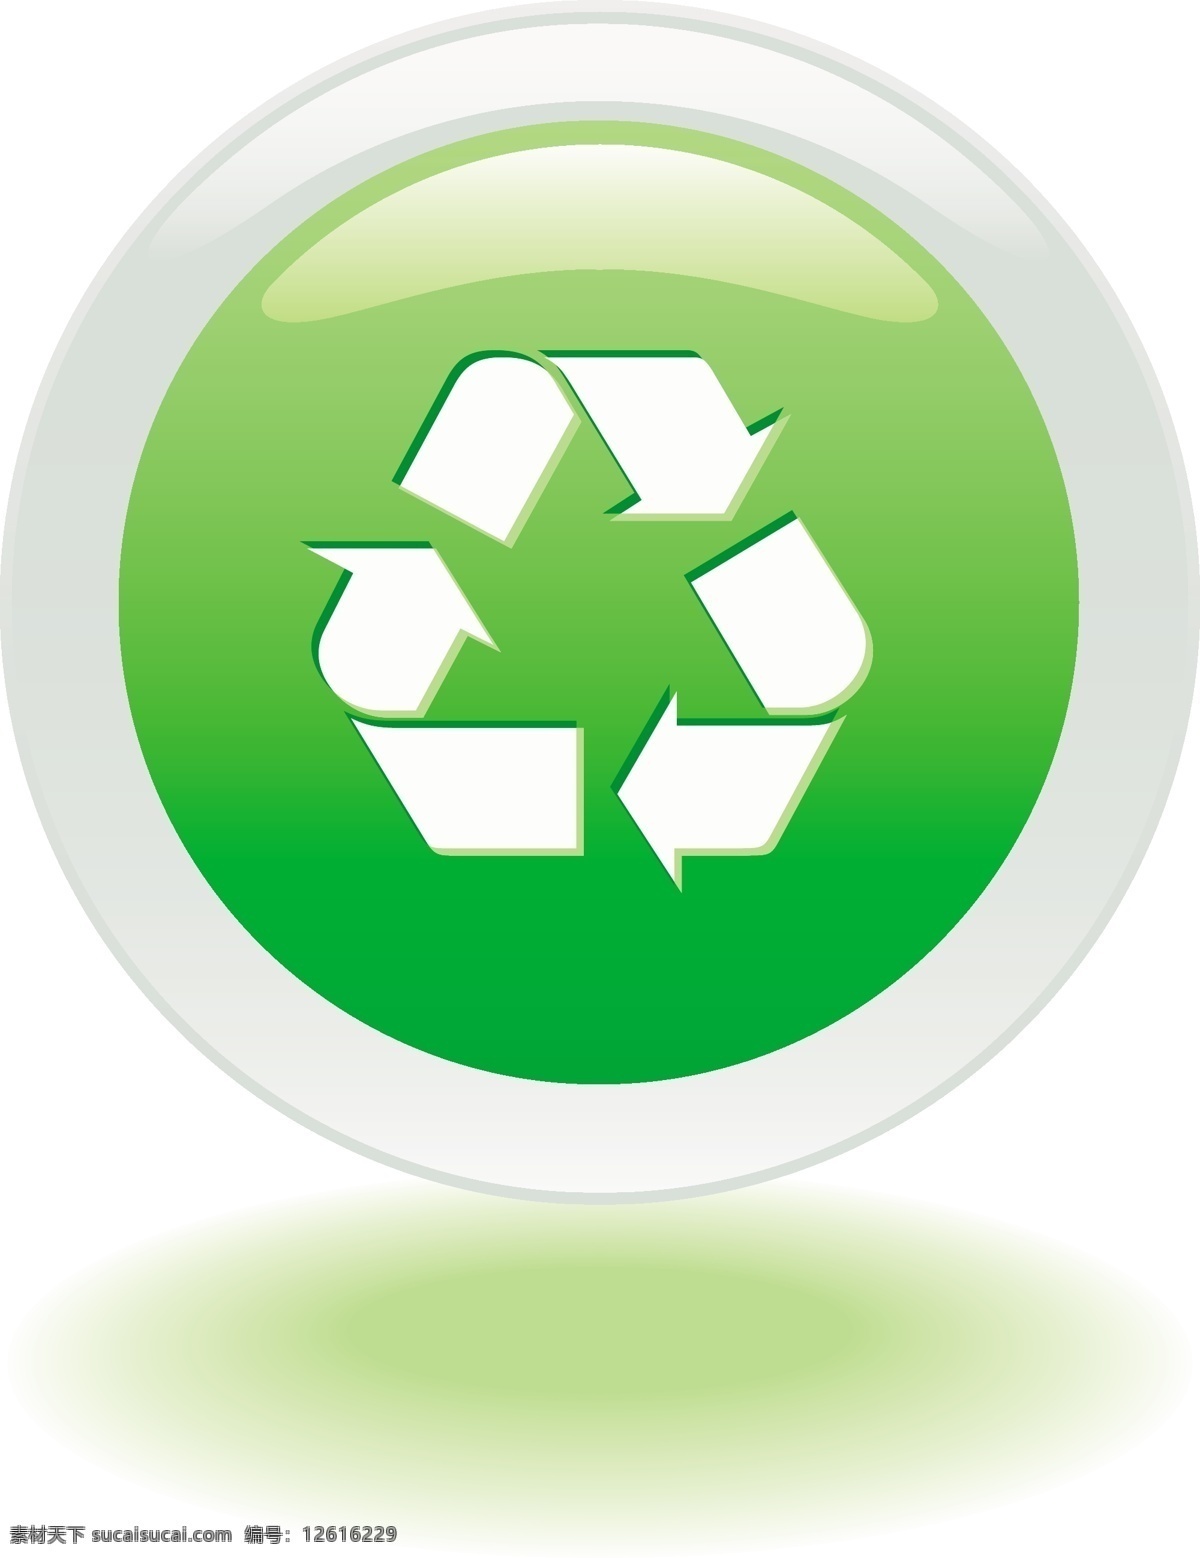 环保免费下载 环保 可回收 绿色 树 循环 圆形按钮 绿色免费下载 循环利用 循环使用 矢量图